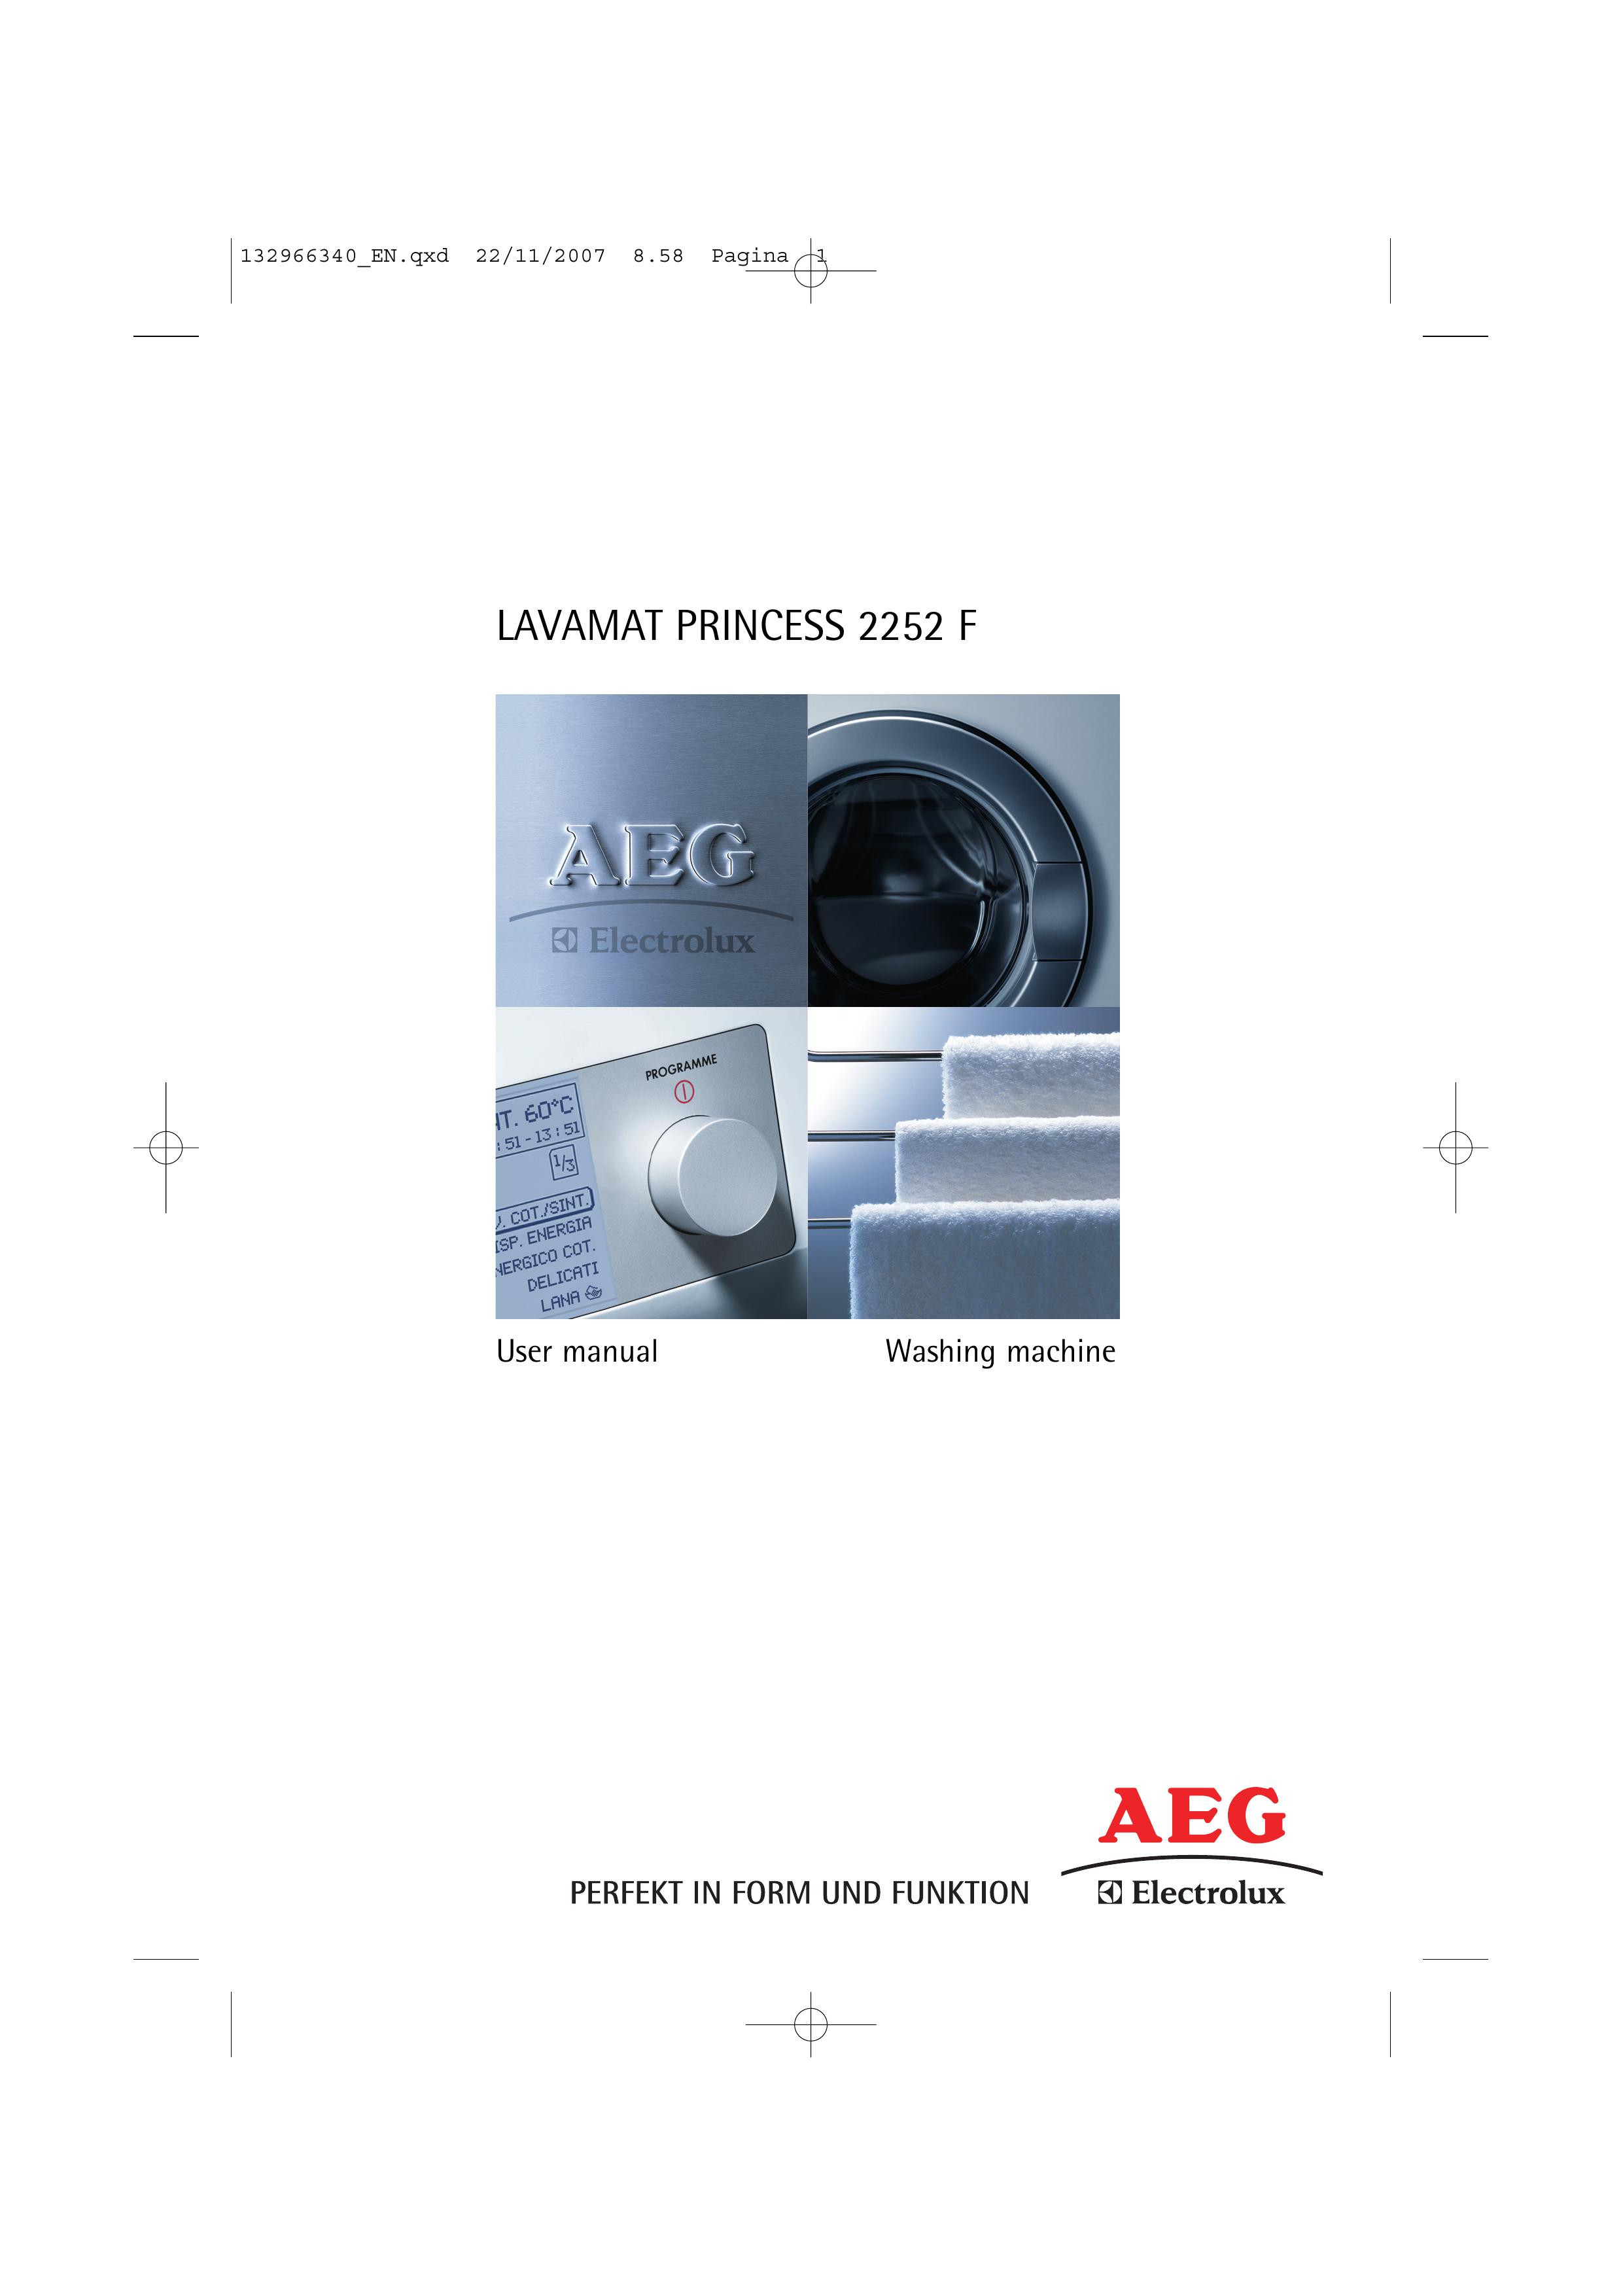 AEG 2252 F Washer User Manual